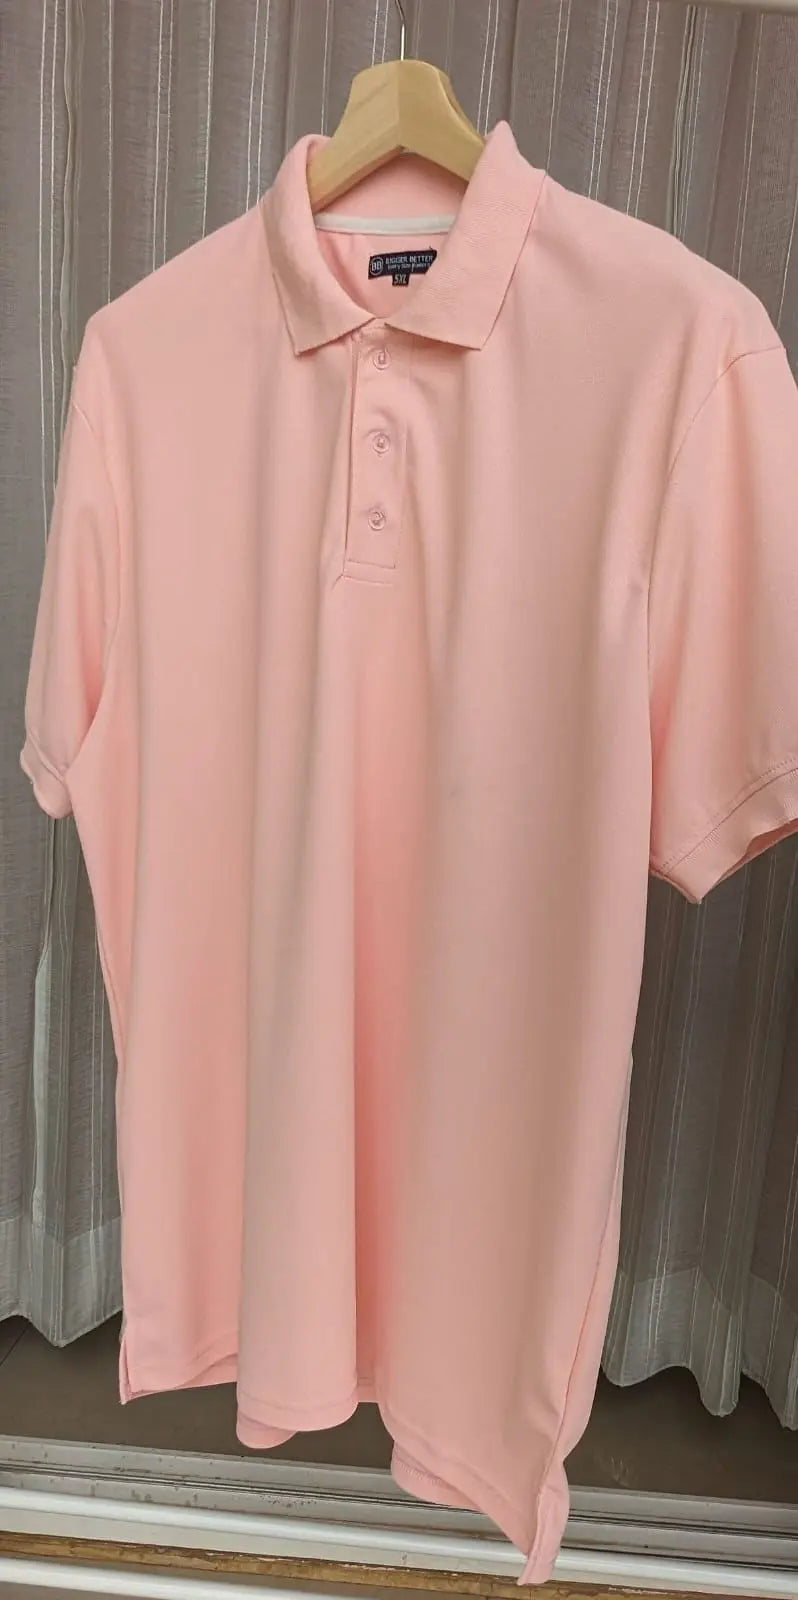 Premium Peach Lite half sleeves polo tshirt Tshirt Bigger Better